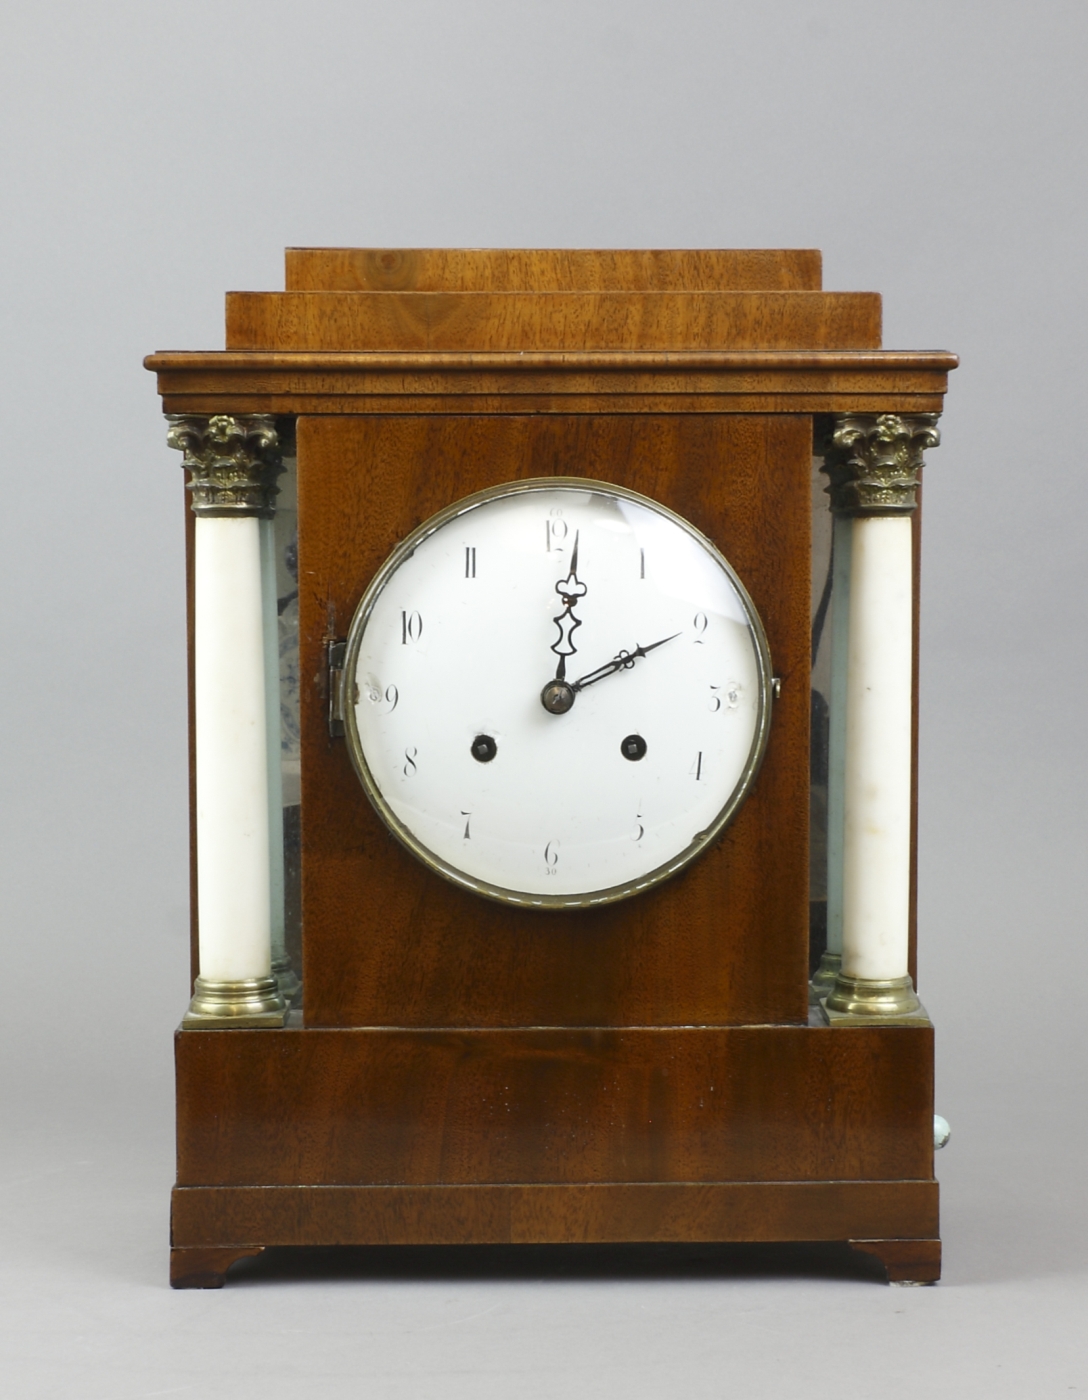 Auktionshaus Quentin Berlin Uhr  Stutzuhr  Mahagoni  Berlin  um 1800